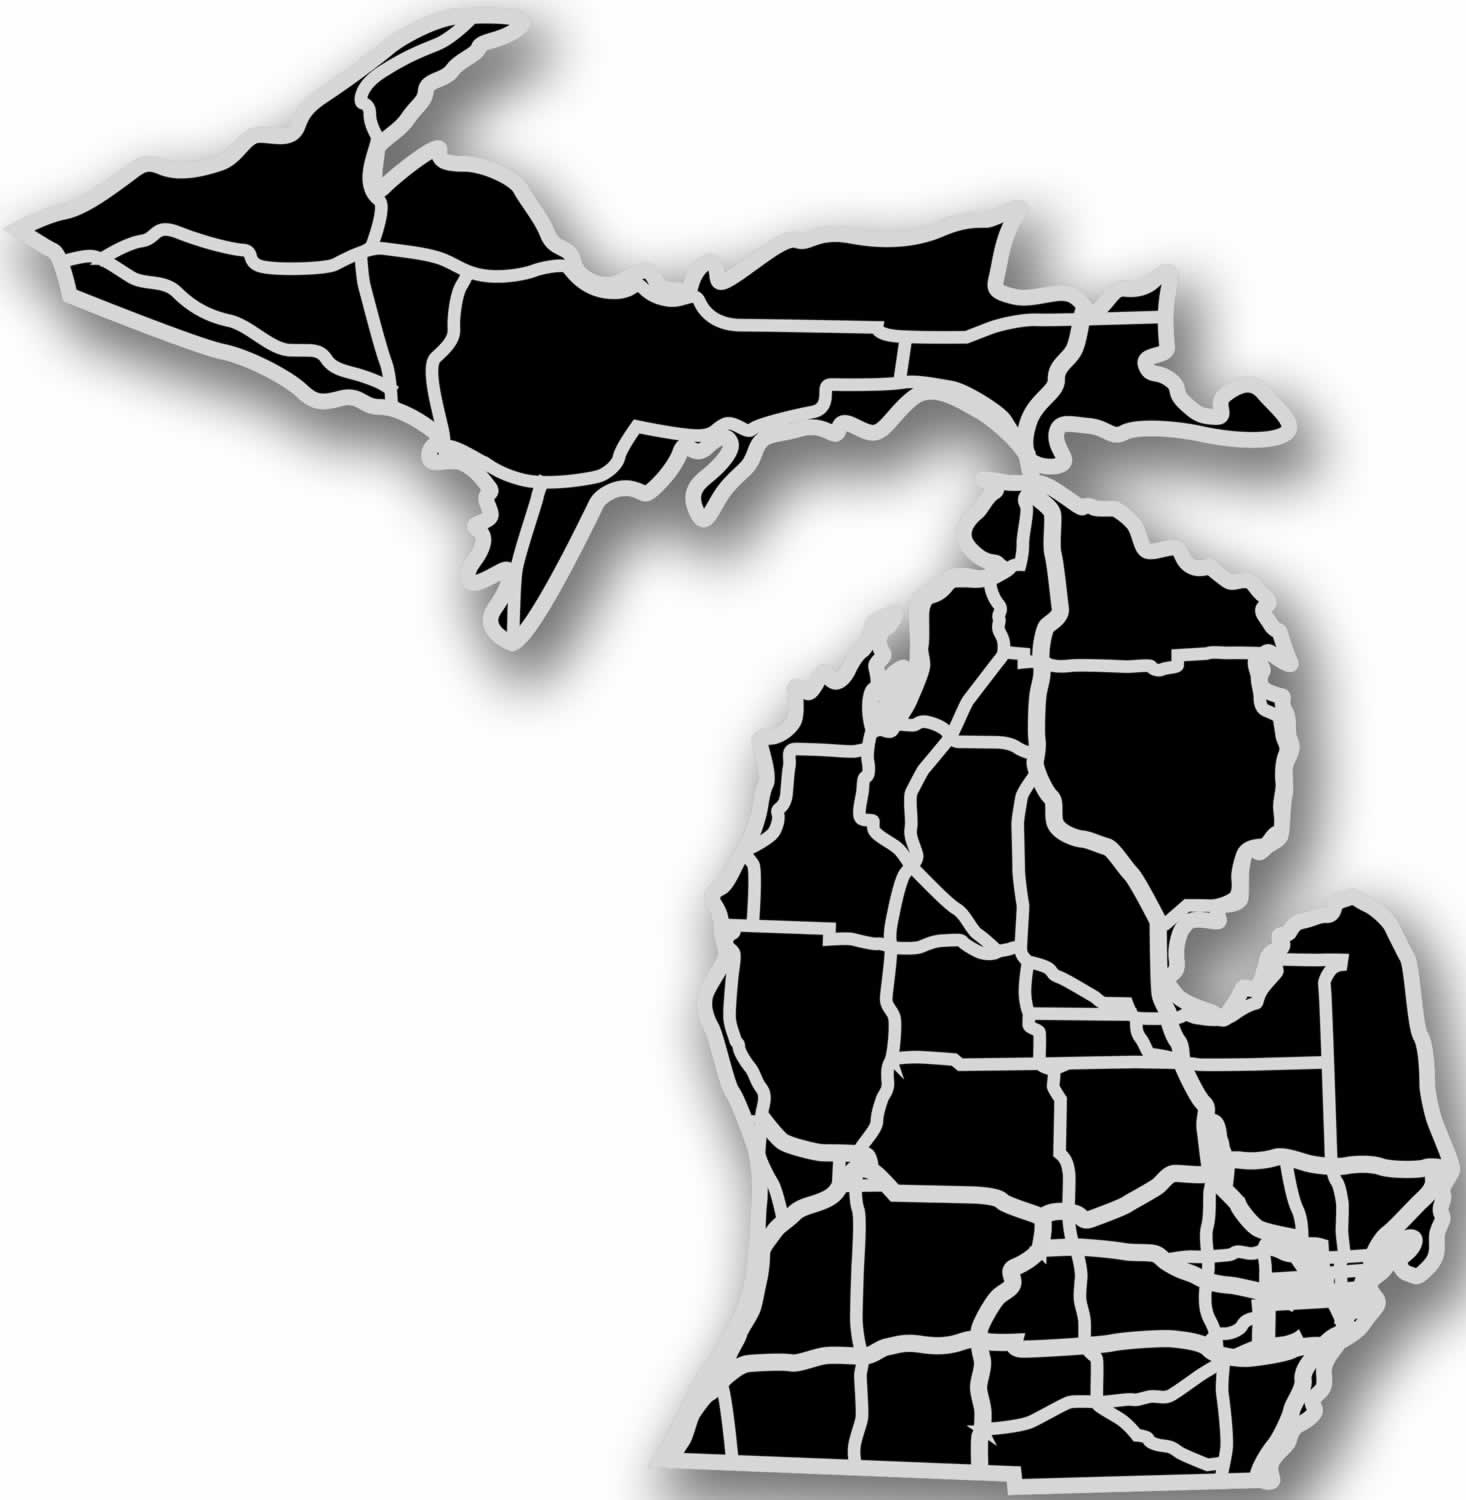 Michigan - Acrylic Cutout State Map - Black/Grey USA States Acrylic Art